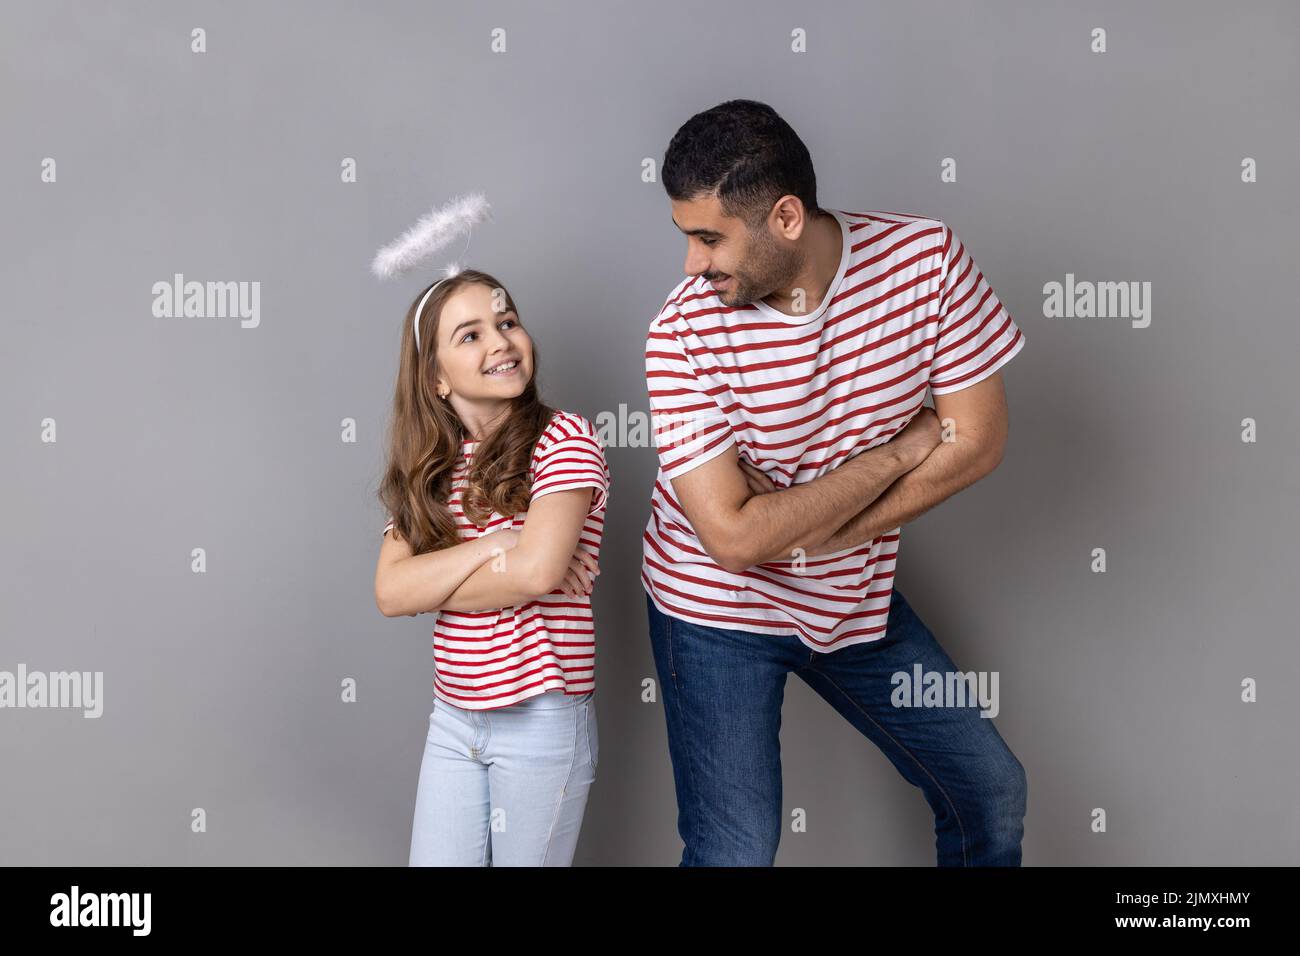 Retrato de un padre y una hija alegres y sonrientes en camisetas a rayas de pie con las manos dobladas y mirándose, la familia expresando la felicidad. Estudio de interior grabado aislado sobre fondo gris. Foto de stock